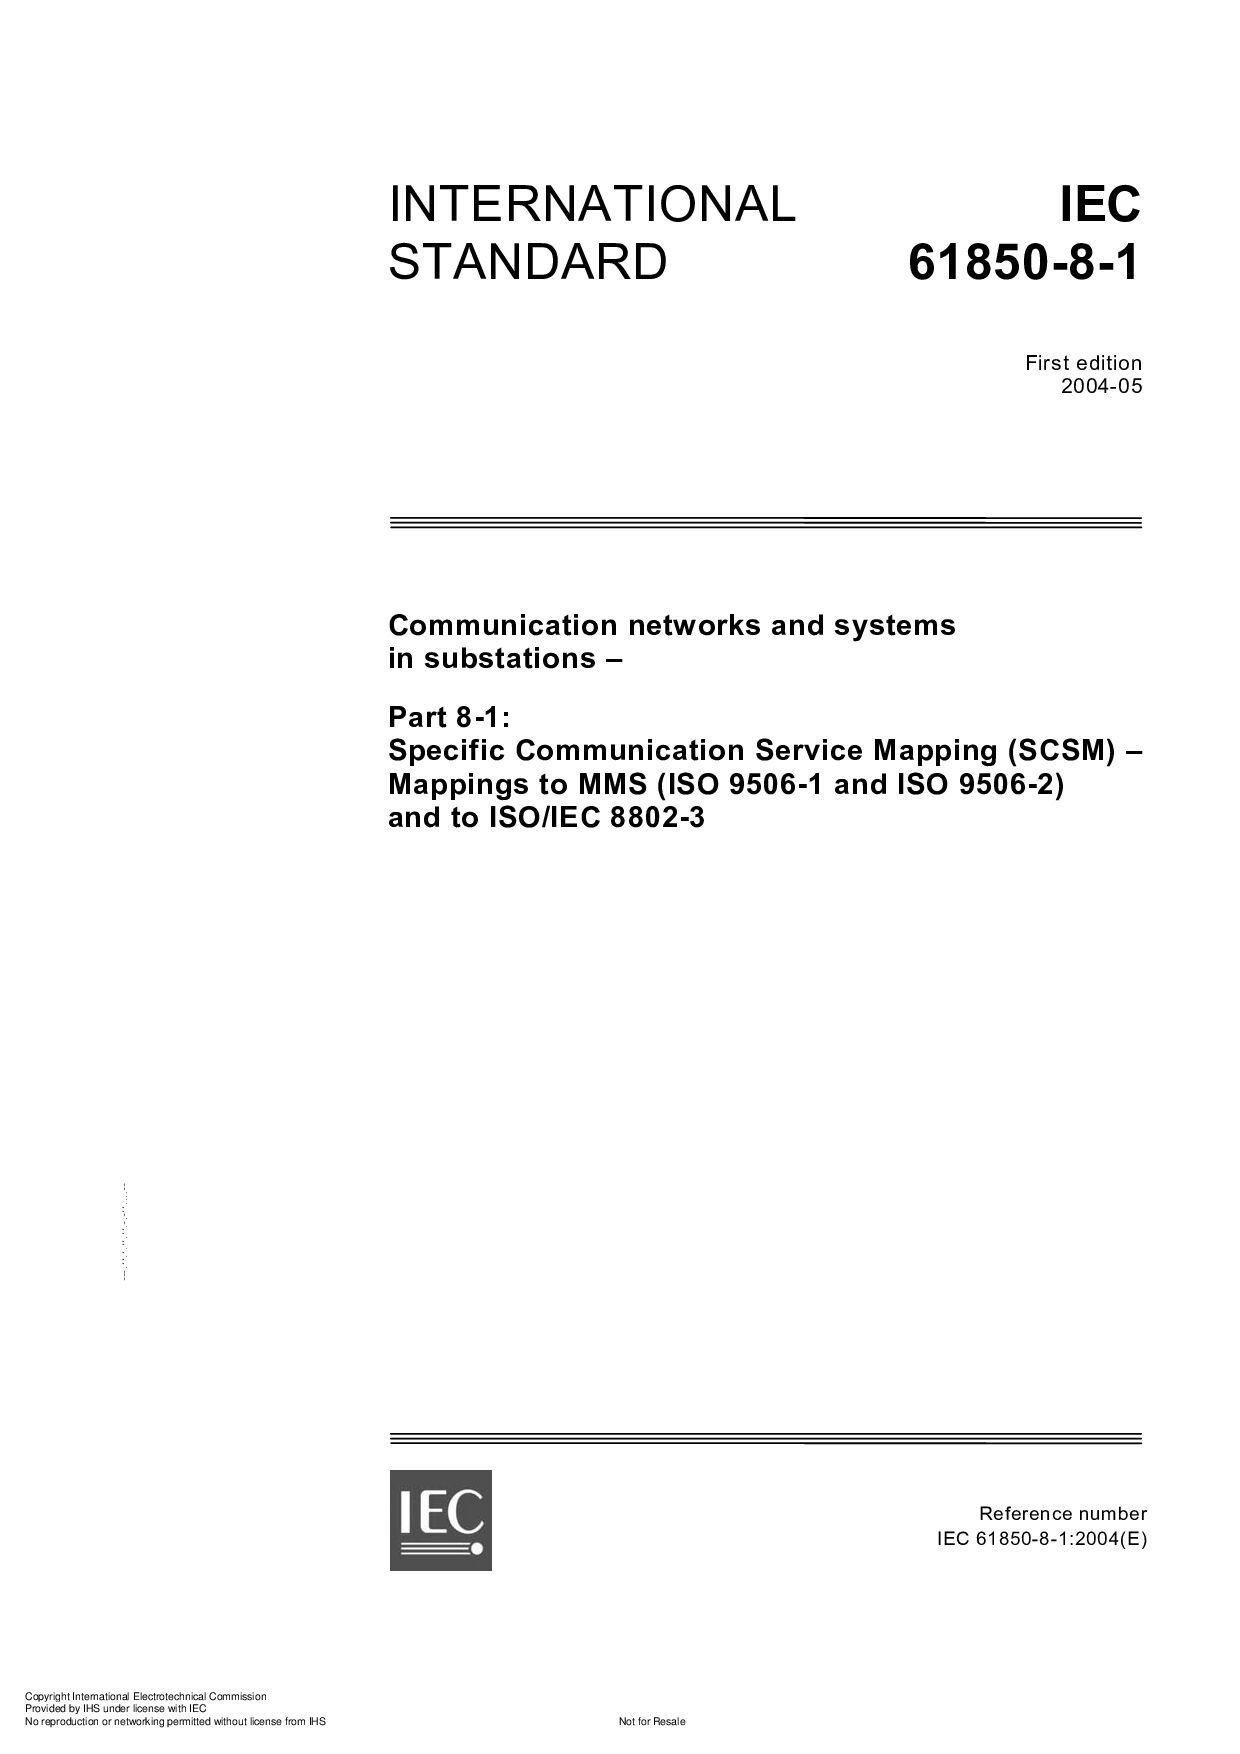 IEC 61850-8-1-2004